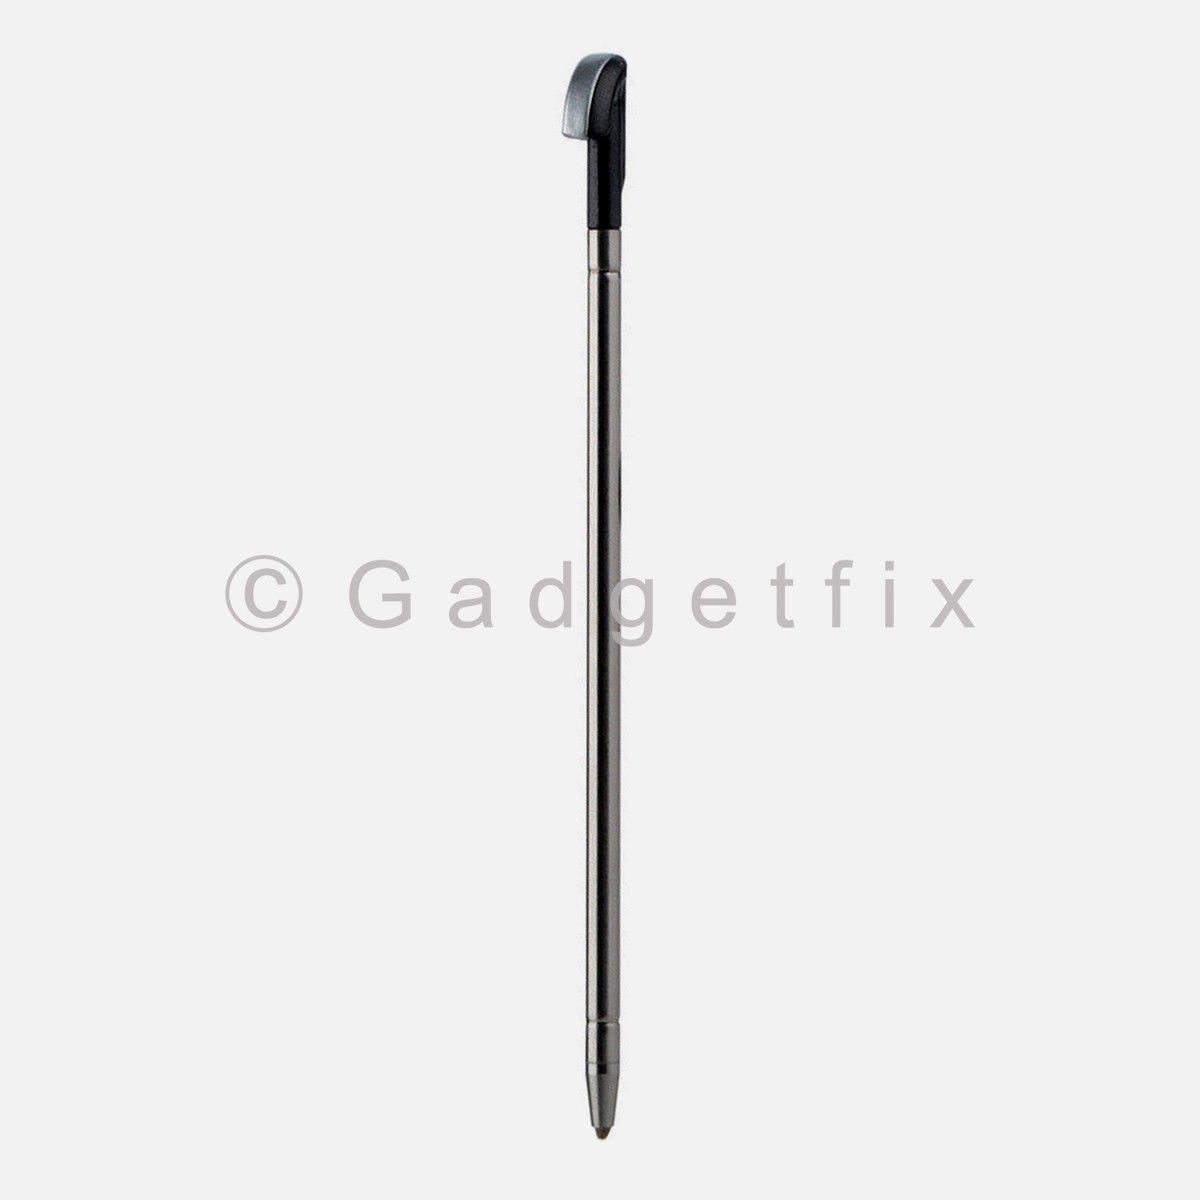 Touch Pen Stylus Pen S Pen Replacement For LG Stylo 3 LS777 L83BL L84VL M430